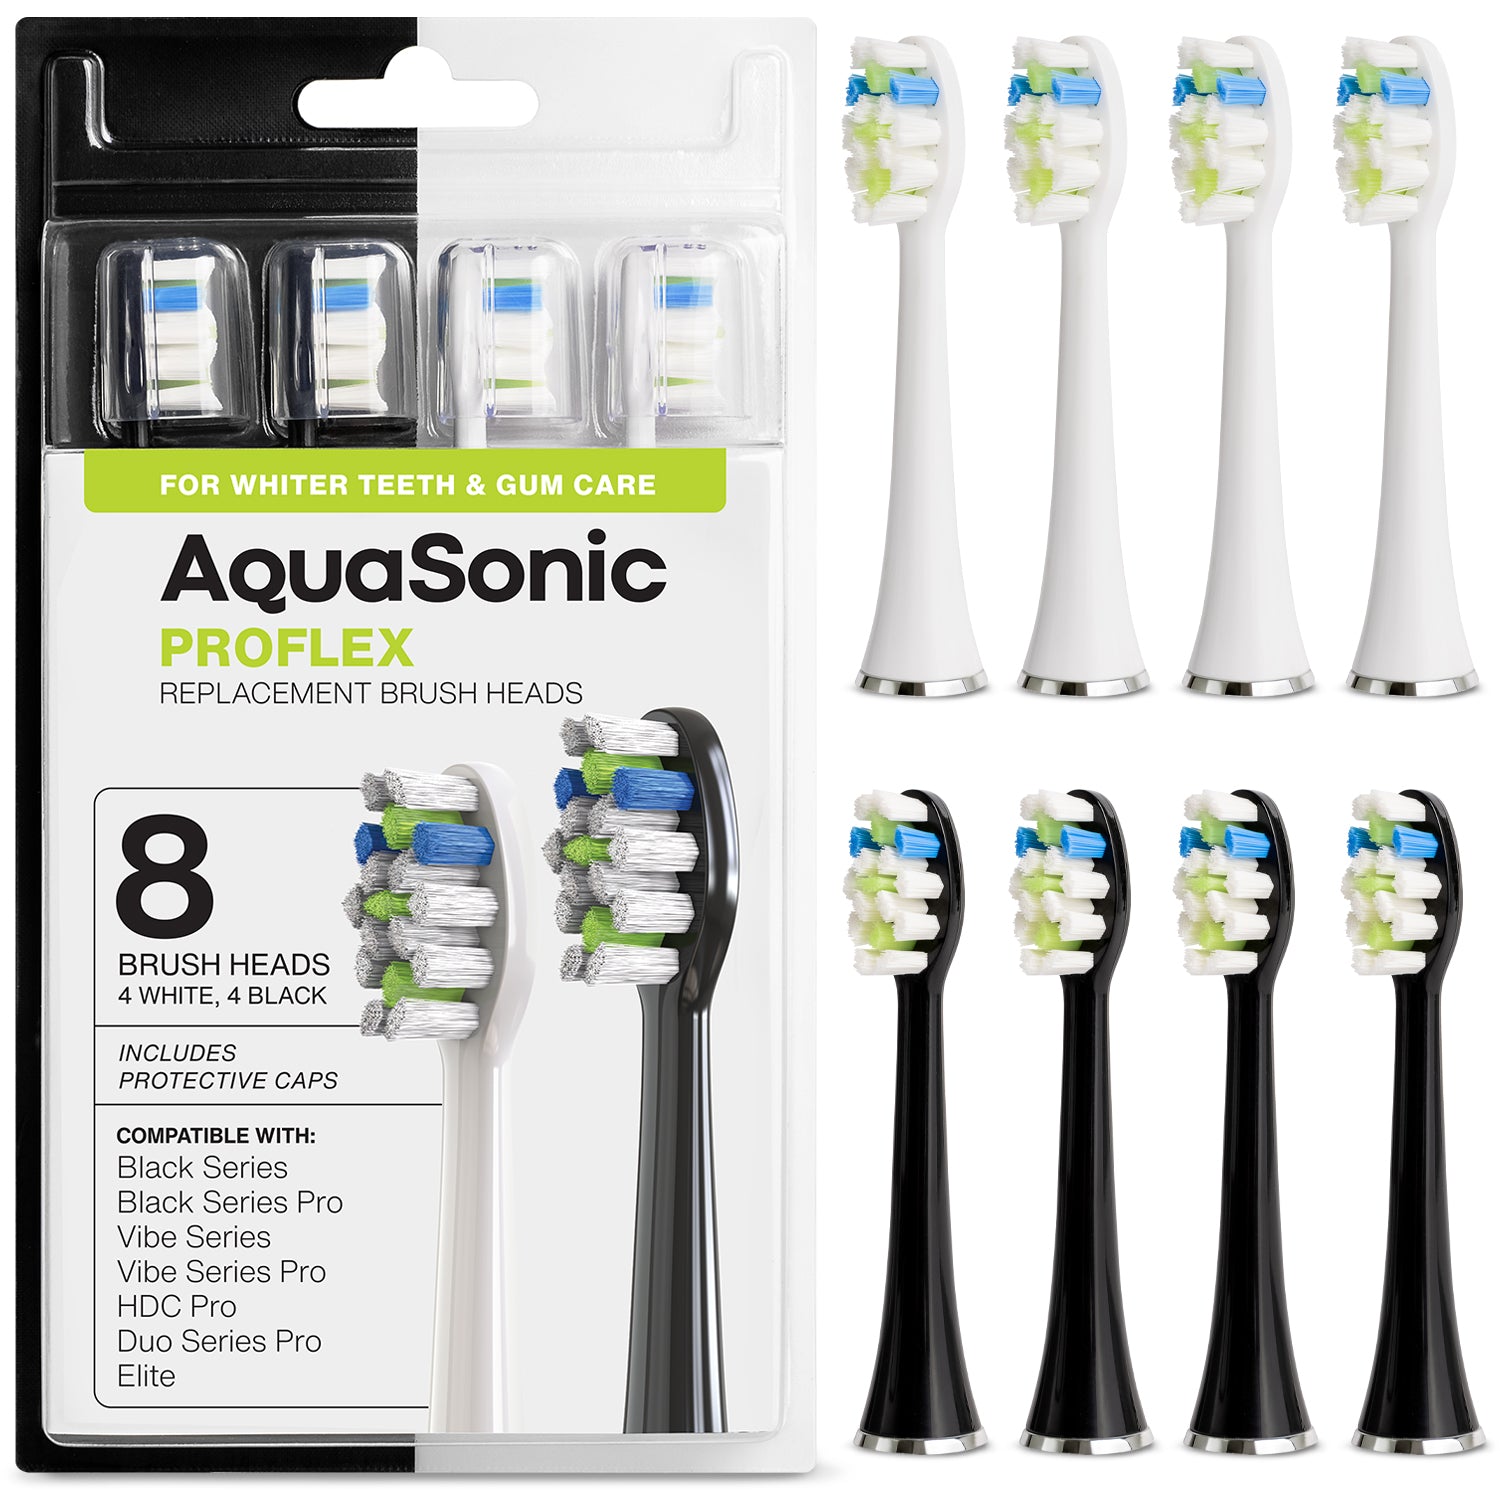 DUO SERIES PRO Replacement Brush Heads – AquaSonic